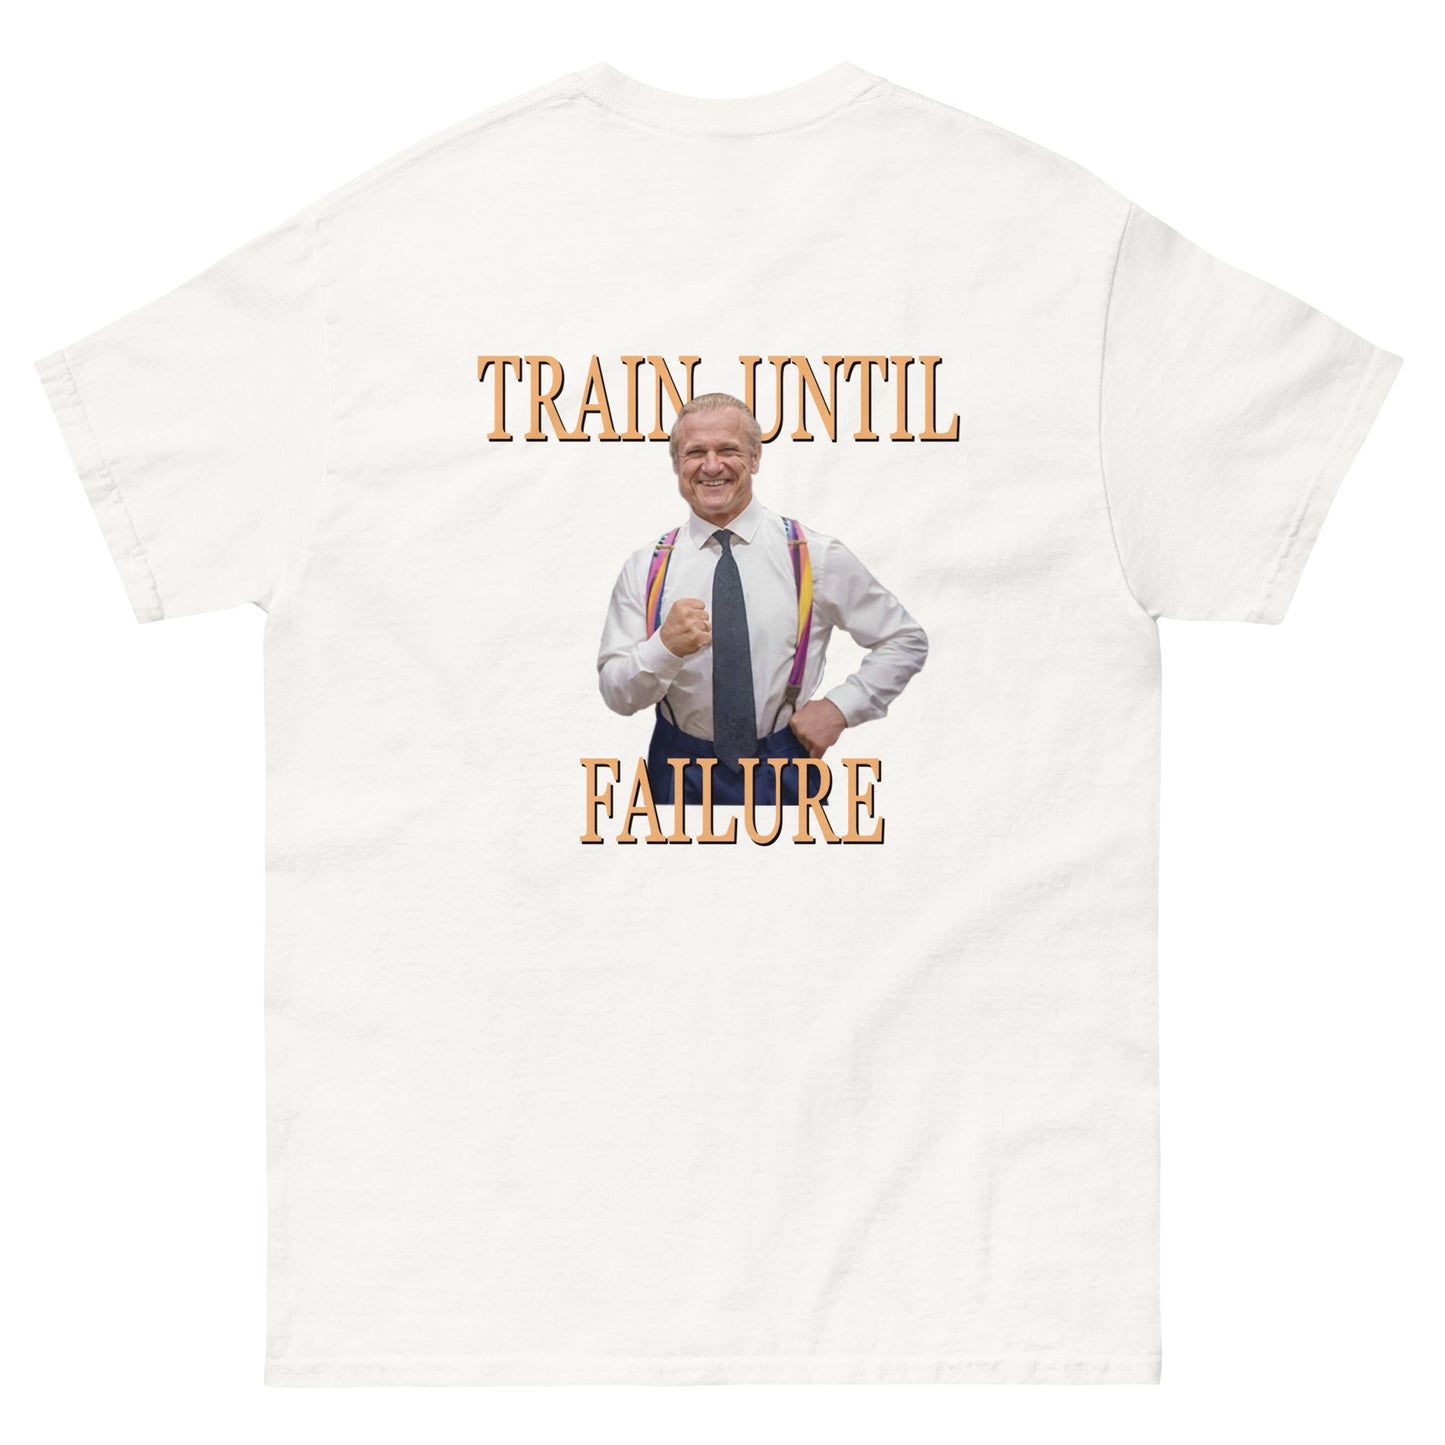 "Train until failure" - Classic T-Shirt